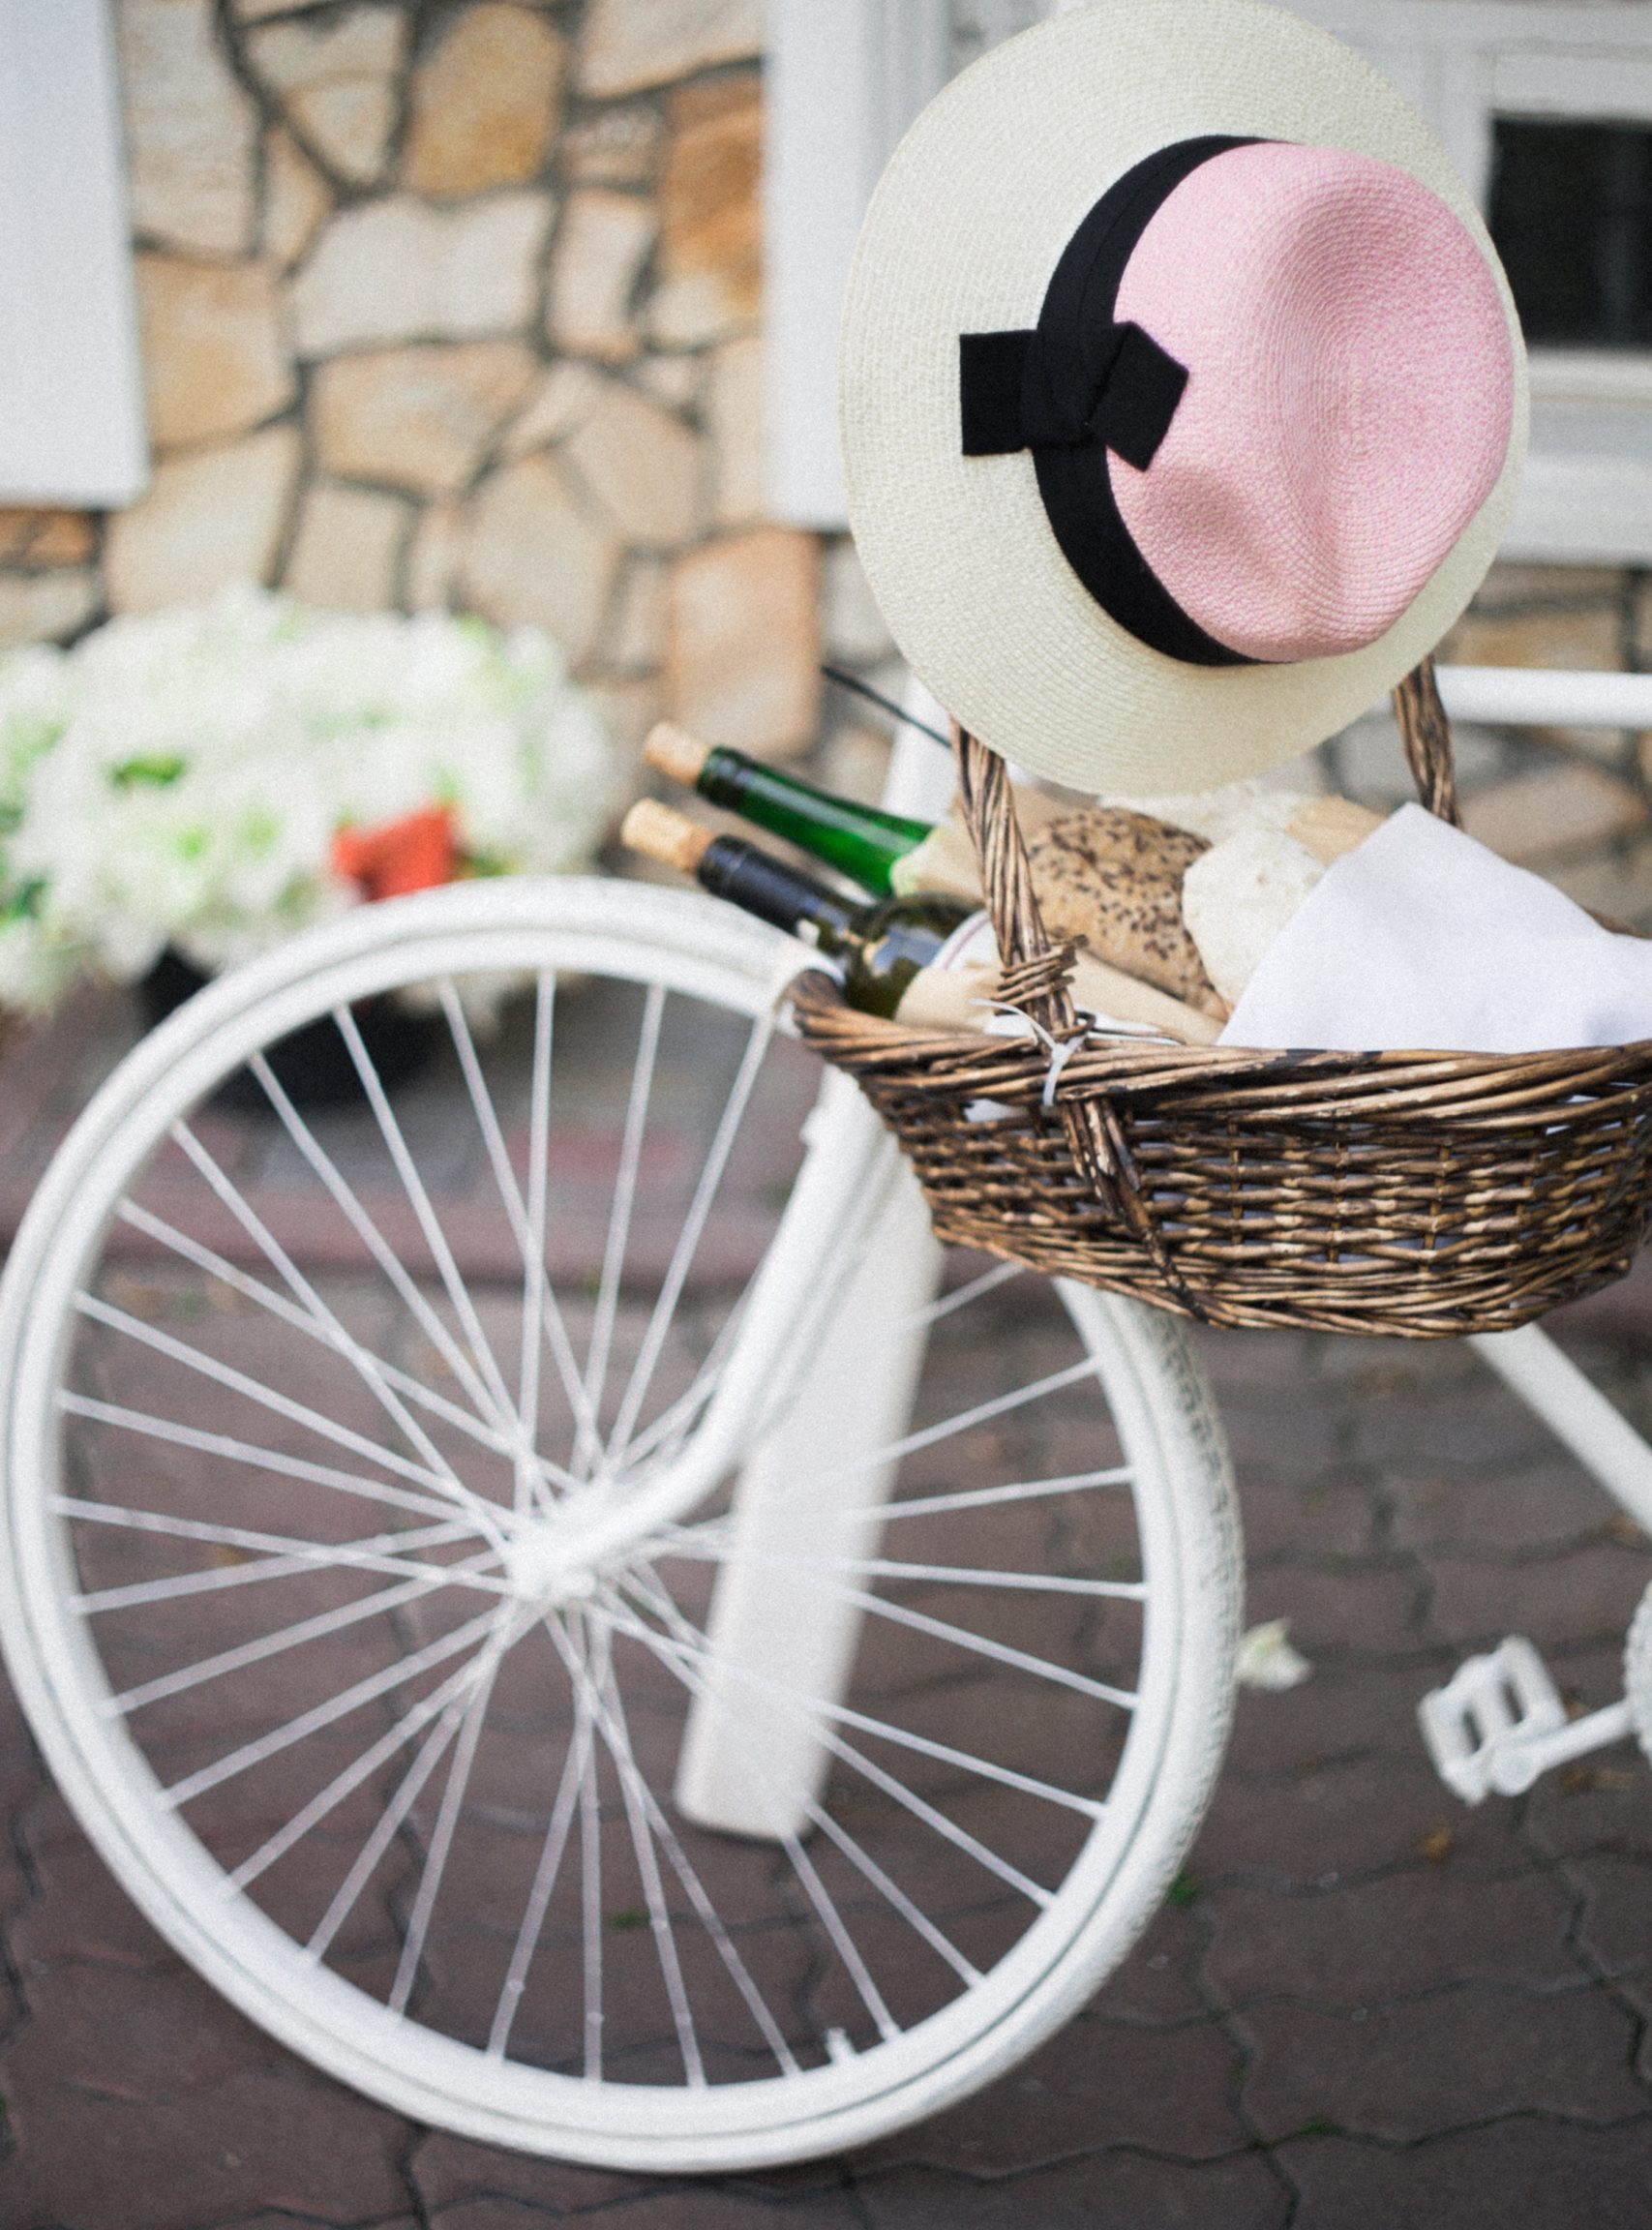 Weinflaschen in Korb an einem Fahrrad in Frankreich